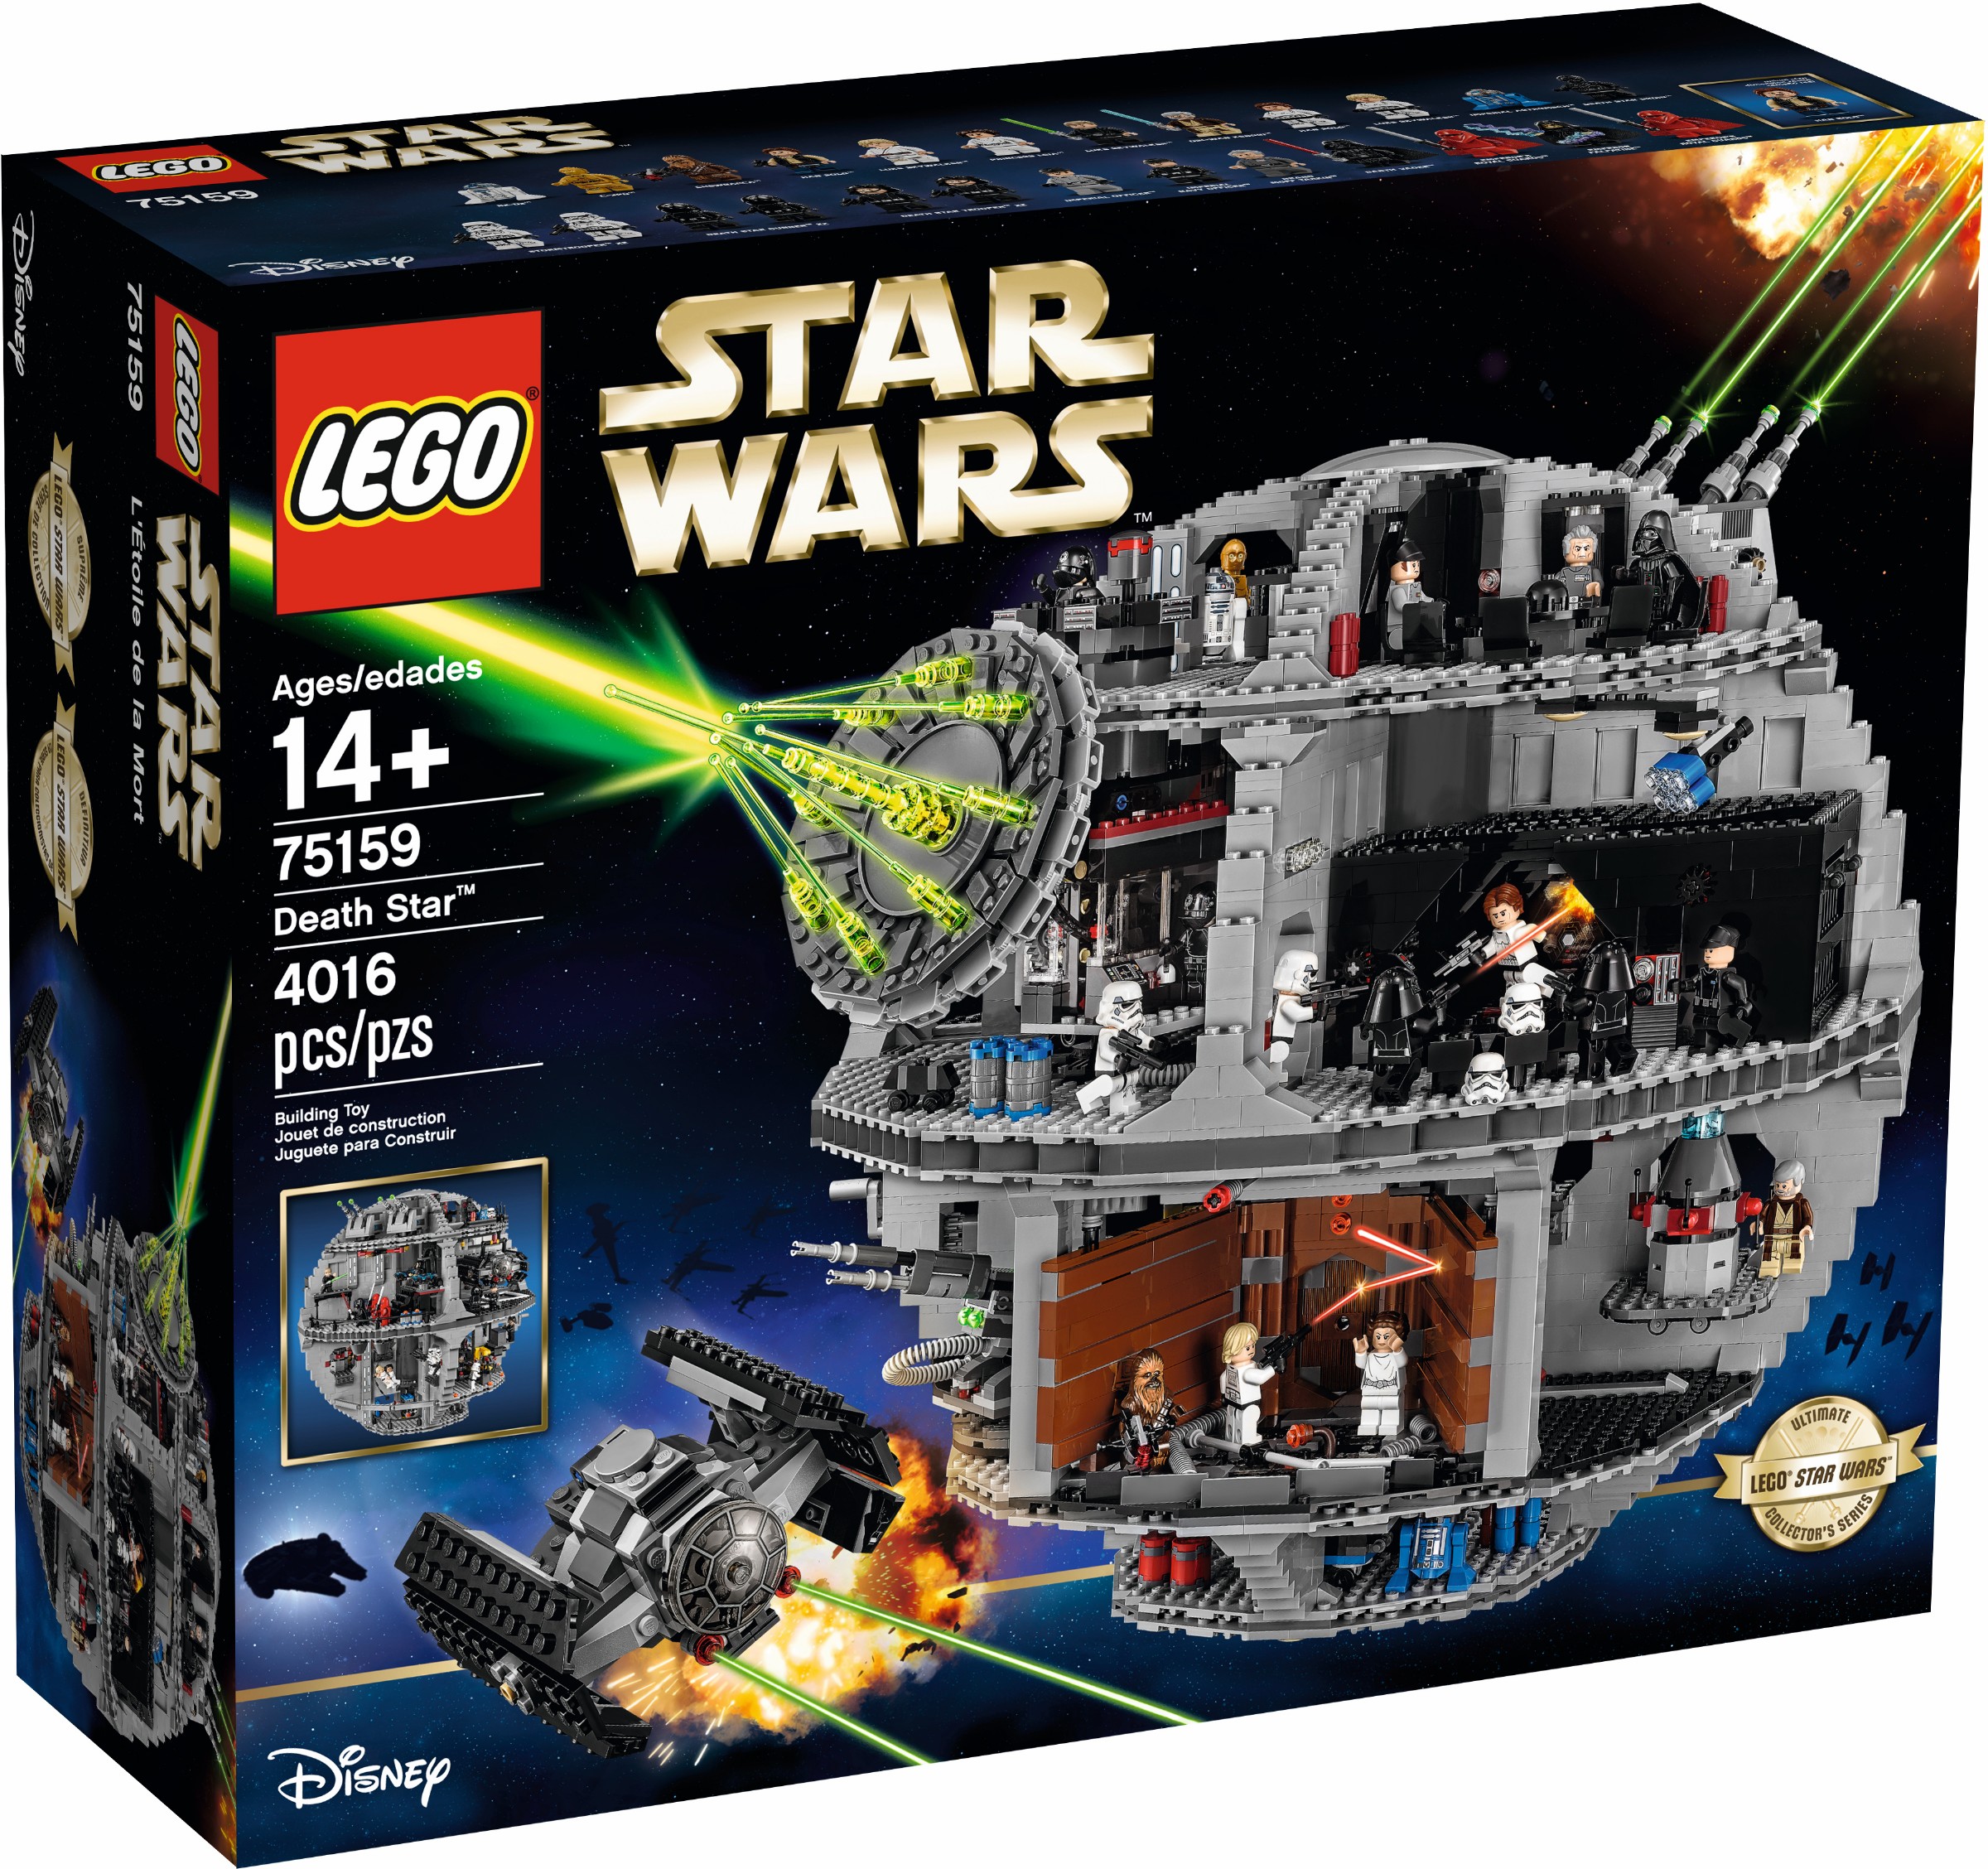 Acrylic Display Case For LEGO 75159/10188 Star Wars Death Star 